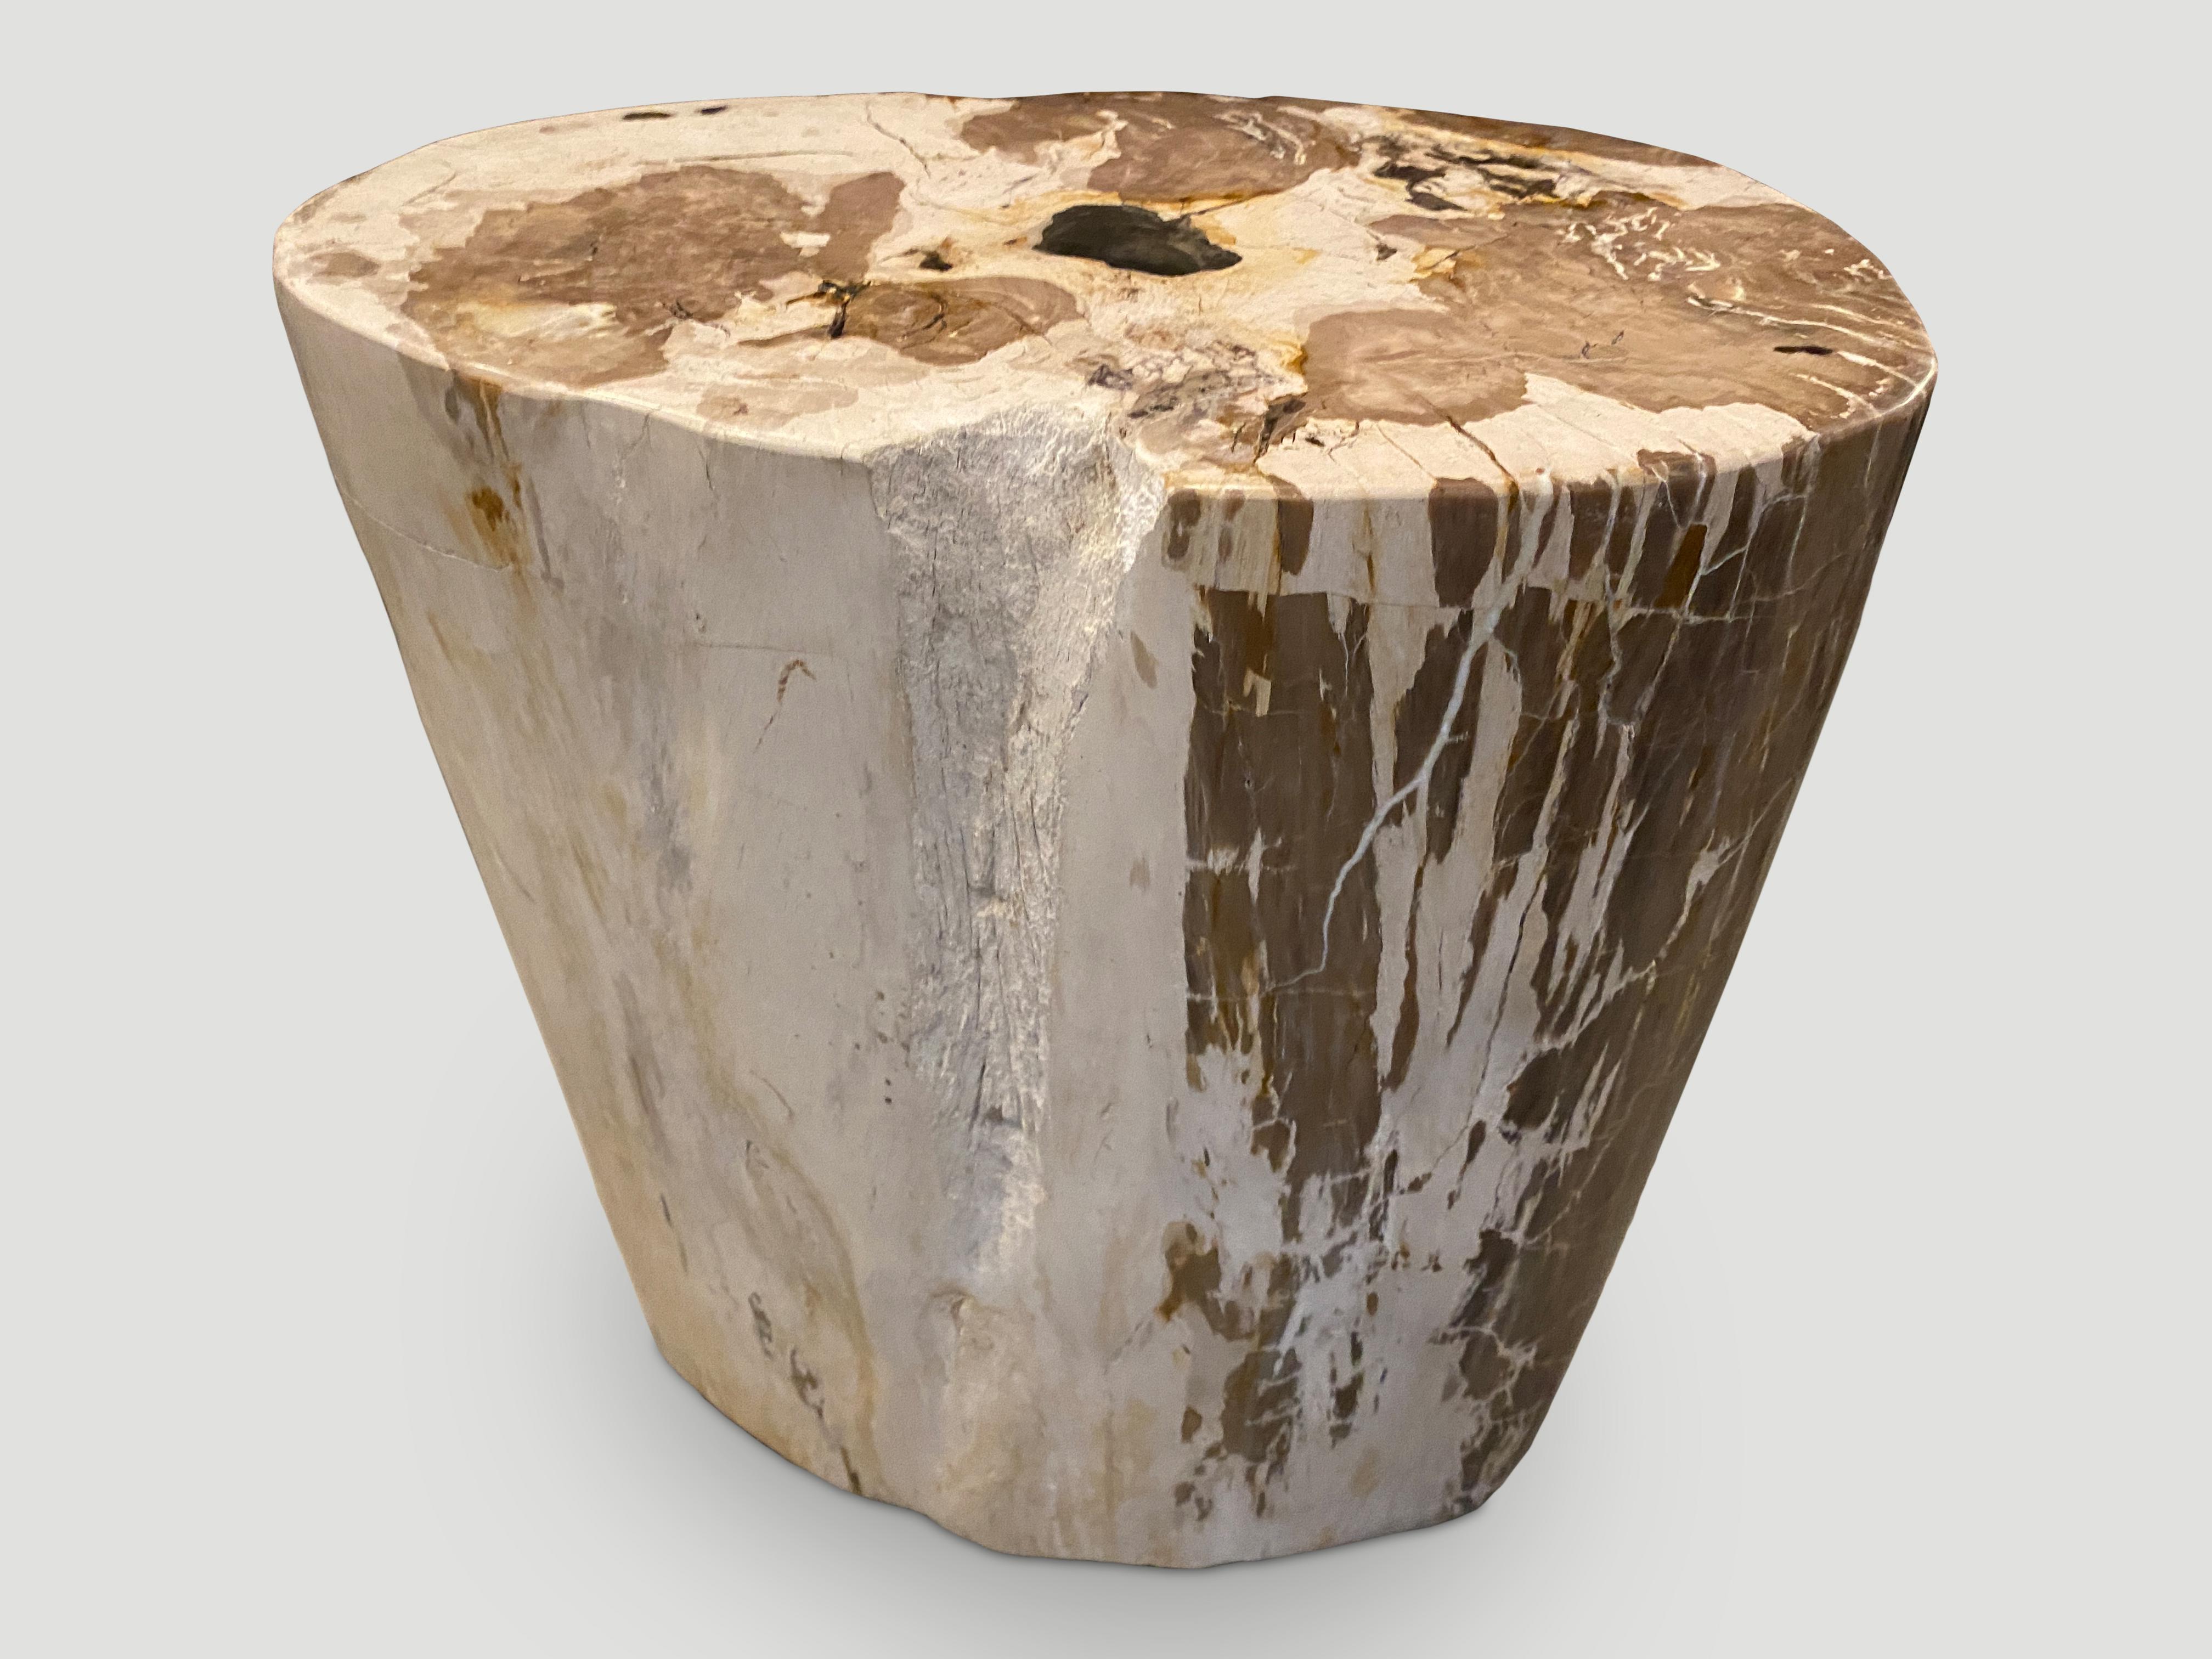 Cette table d'appoint en bois pétrifié est impressionnante par la beauté de ses contrastes de tons et de textures. Il est fascinant de voir comment Mère Nature produit ces exquises billes de teck pétrifié vieilles de 40 millions d'années, aux